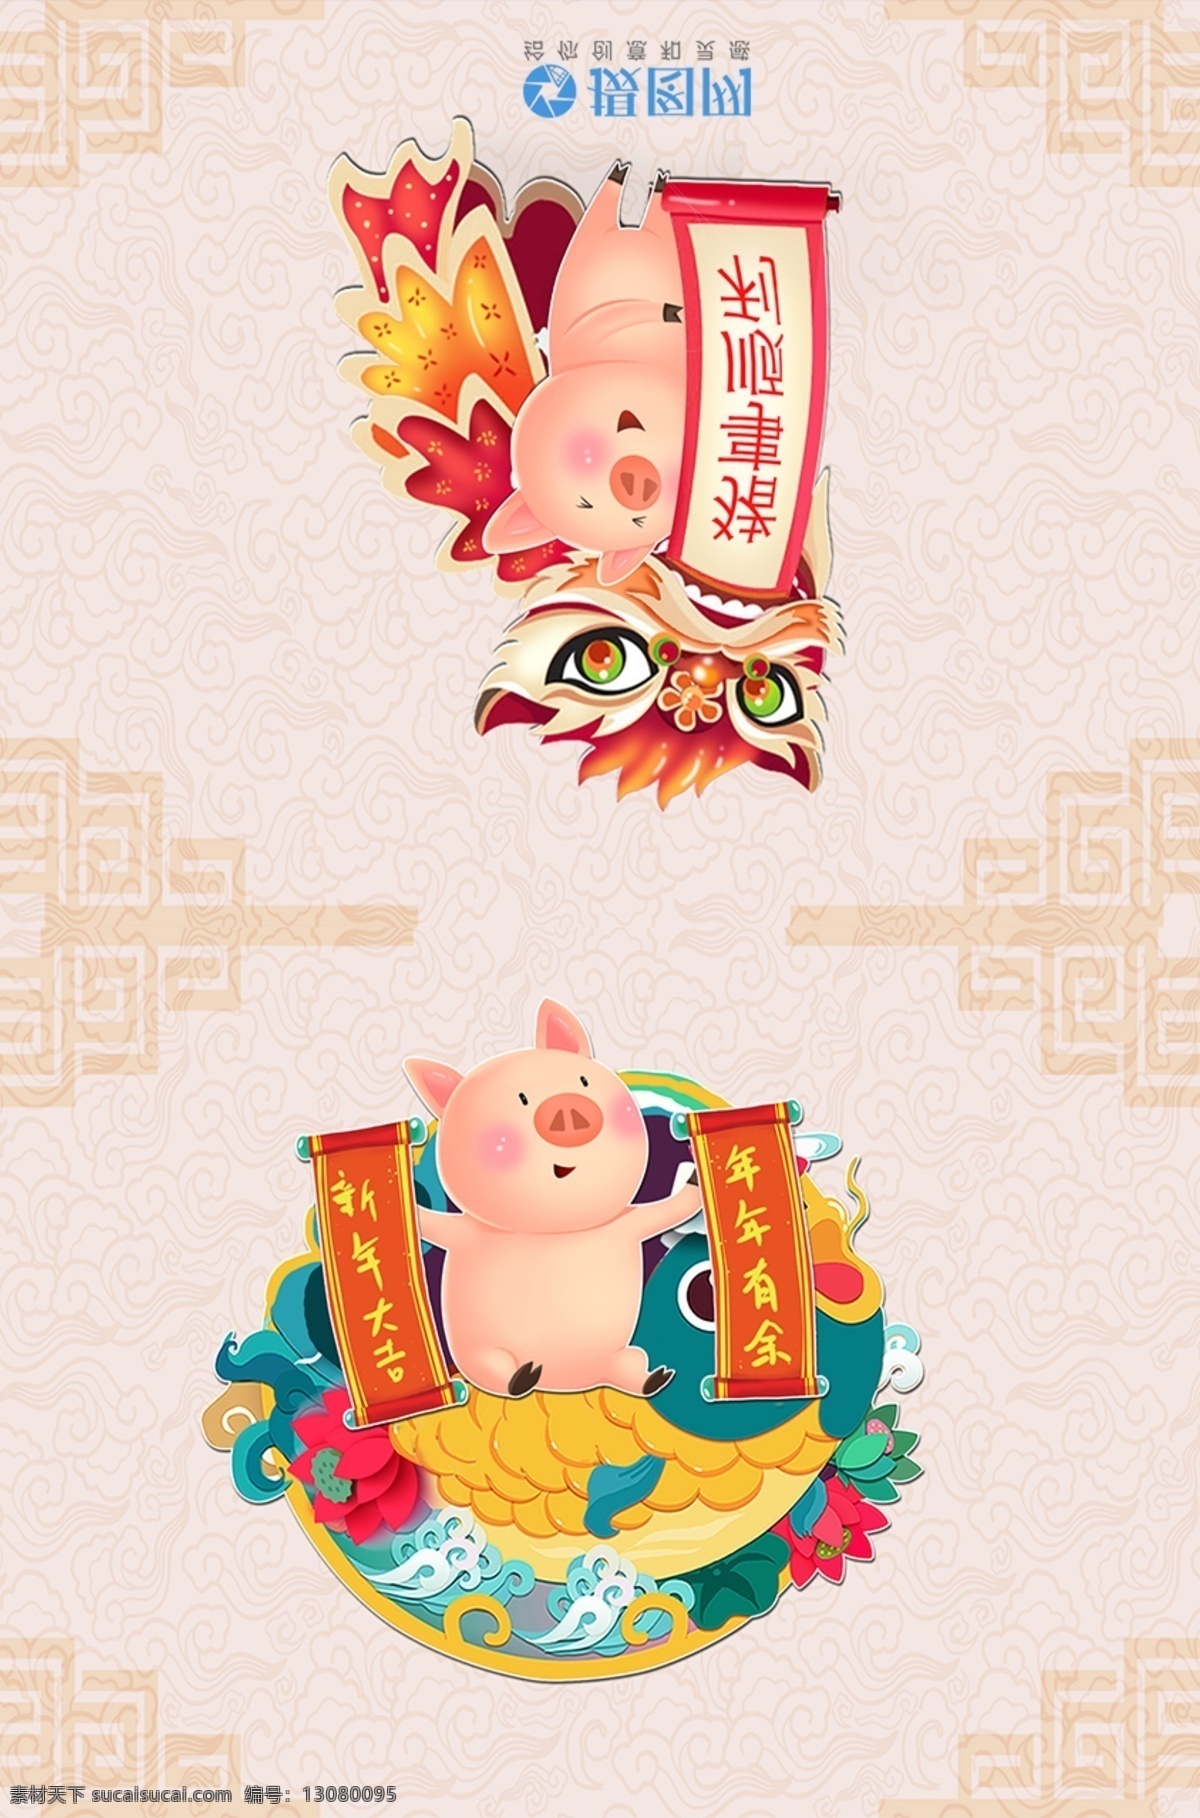 小 猪 新春 新年贺卡 小猪 新年 喜庆 贺卡设计 设计模板 猪年大吉 2019 春节